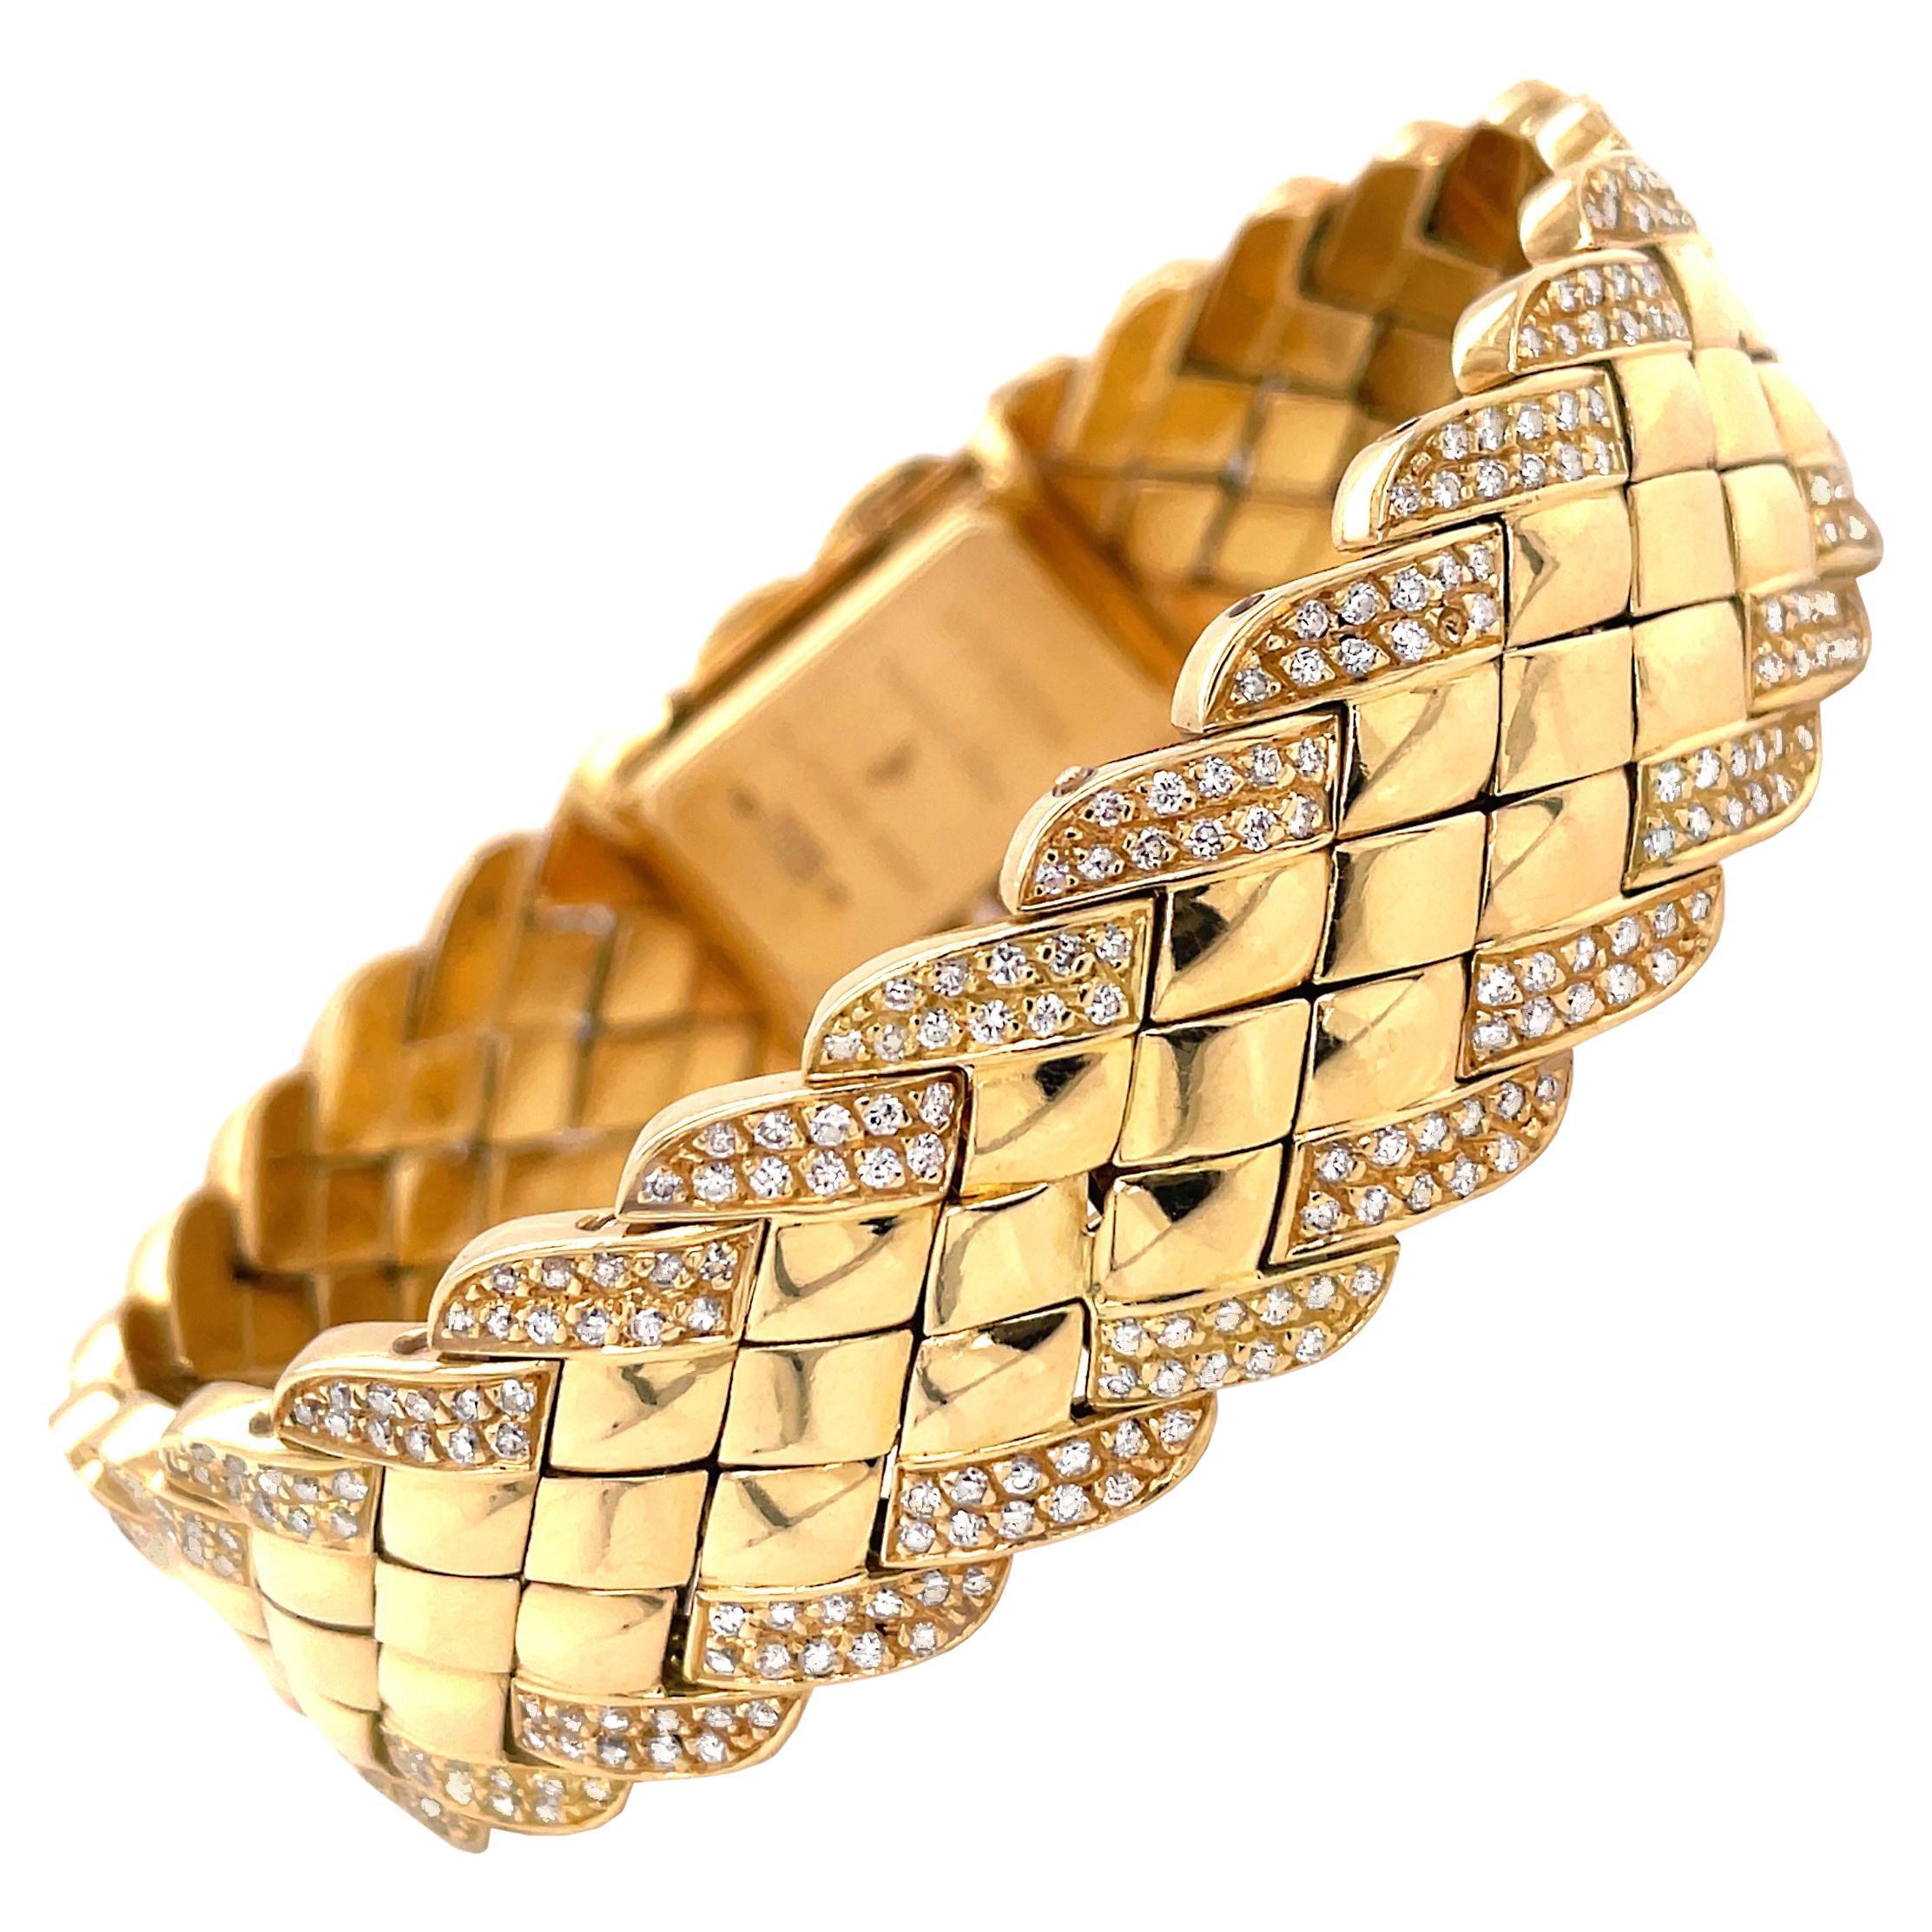 Diese wunderschöne Armbanduhr des französischen Schmuckdesigners Alexis Barthelay ist aus 18 Karat Gelbgold gefertigt. Das Armband ist wunderschön aus diamantförmigen Metallplatten gefertigt und mit einer diamantbesetzten Bordüre mit ca. 4,00 Karat